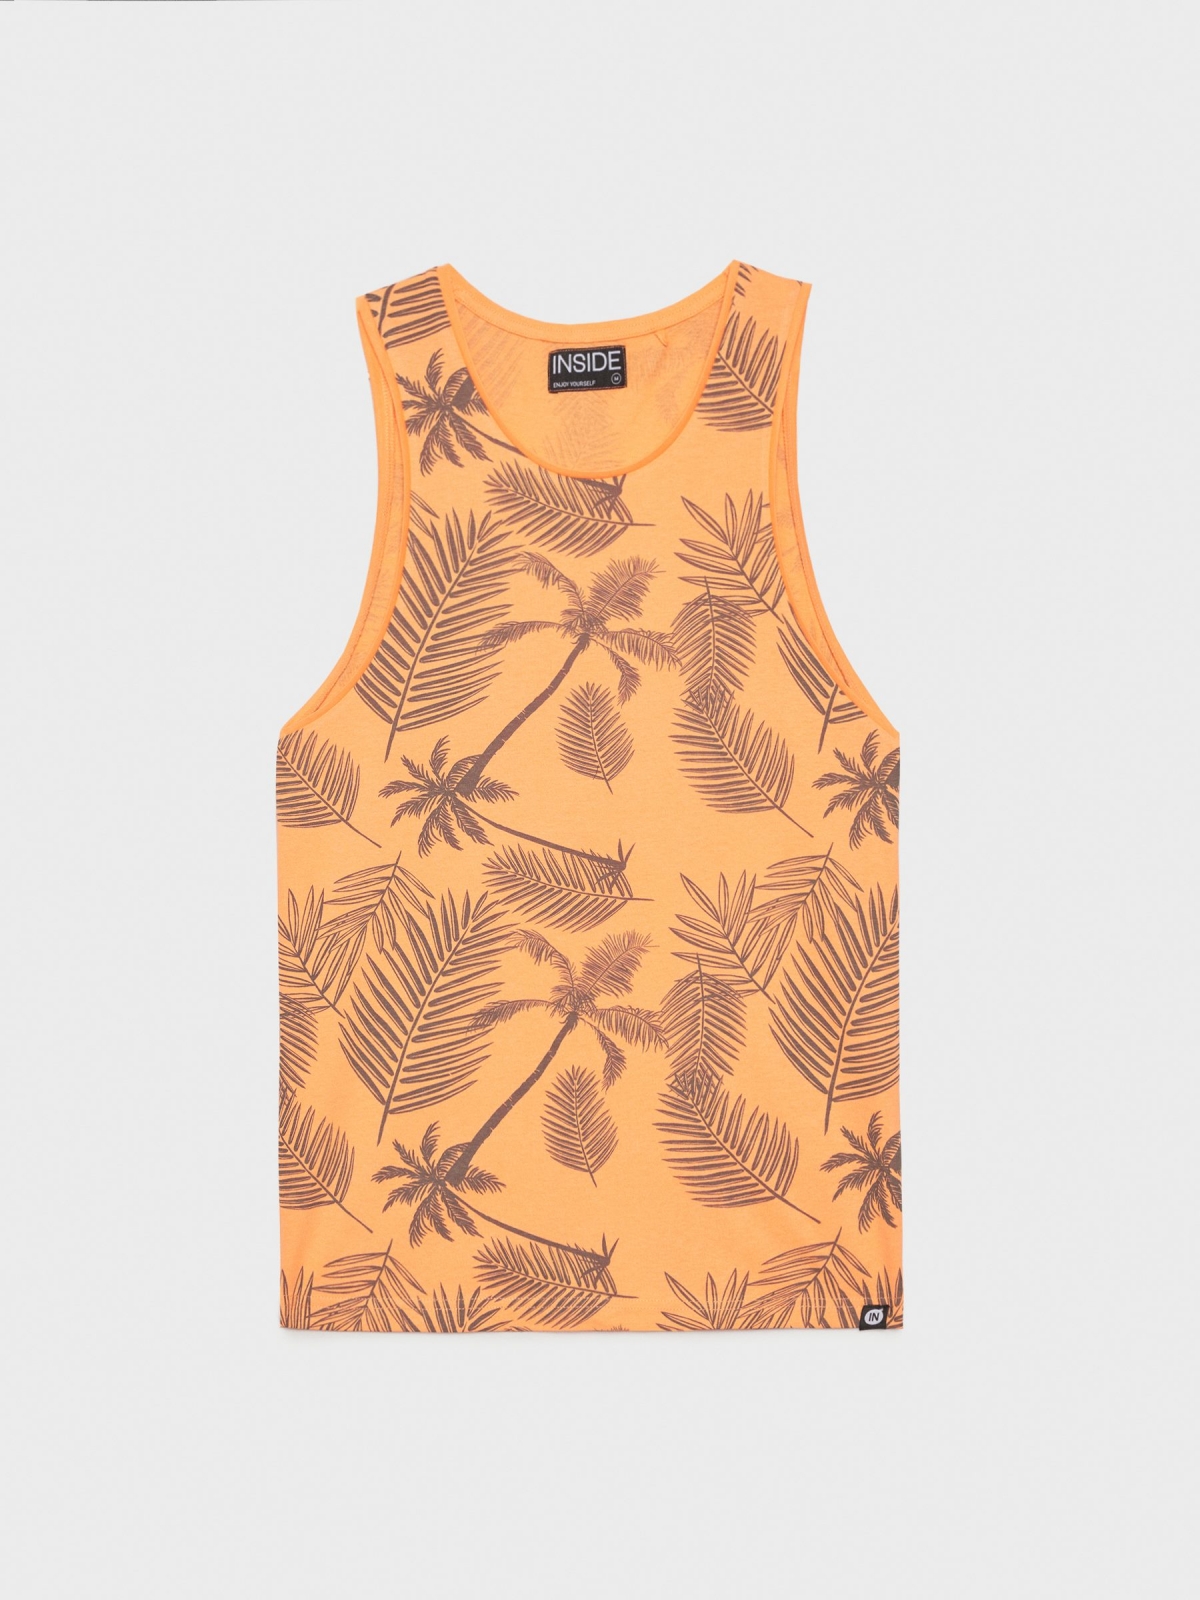  T-shirt do tanque de folhas de palma salmão